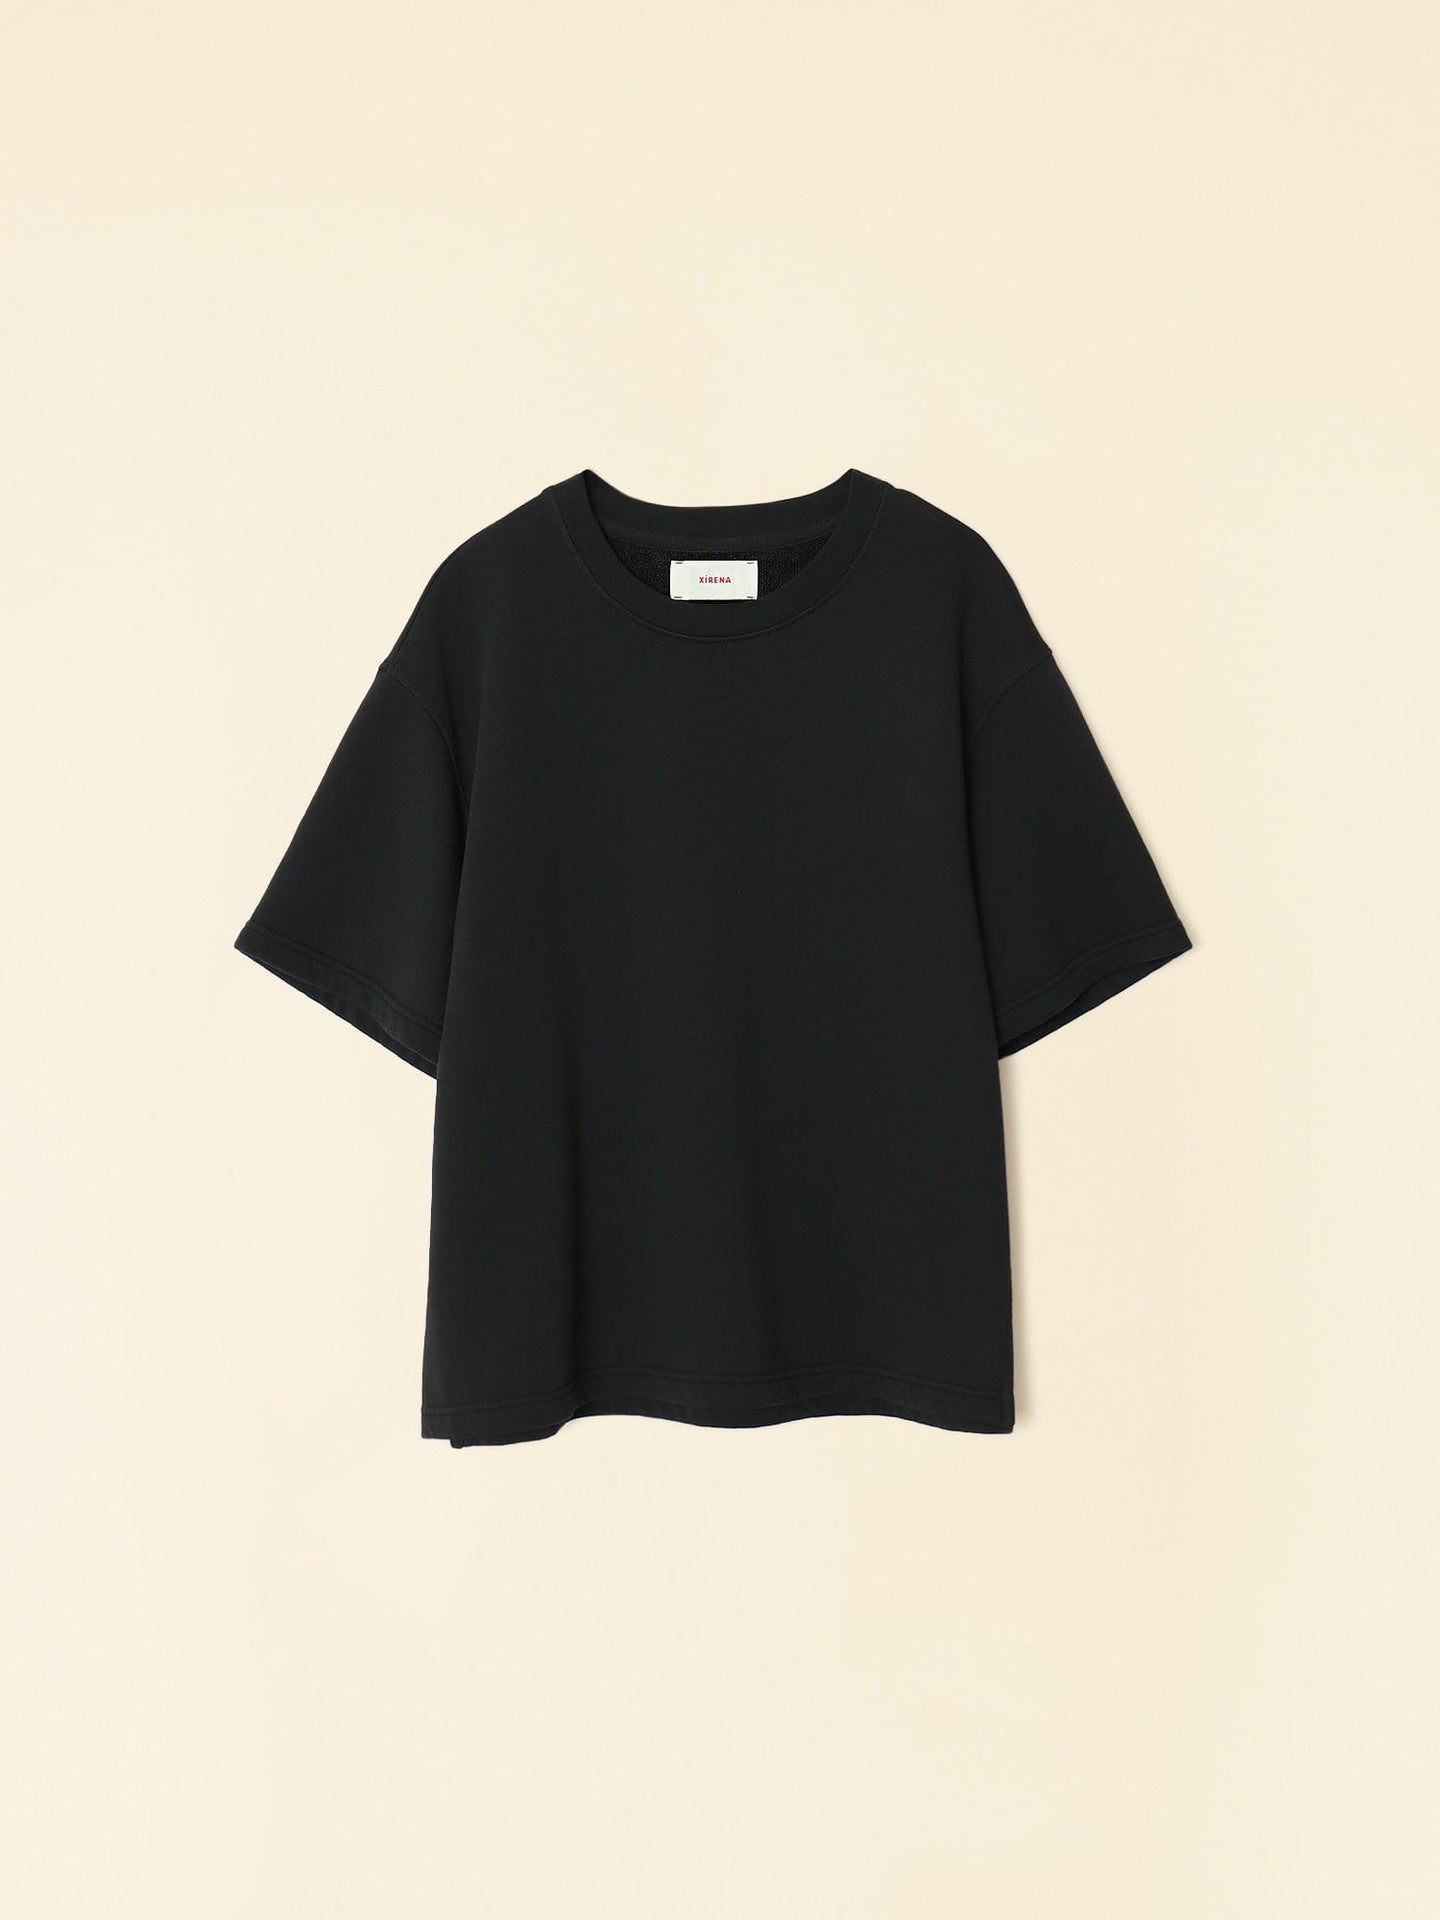 Xirena Sweatshirt Vintage Black Andye Sweatshirt